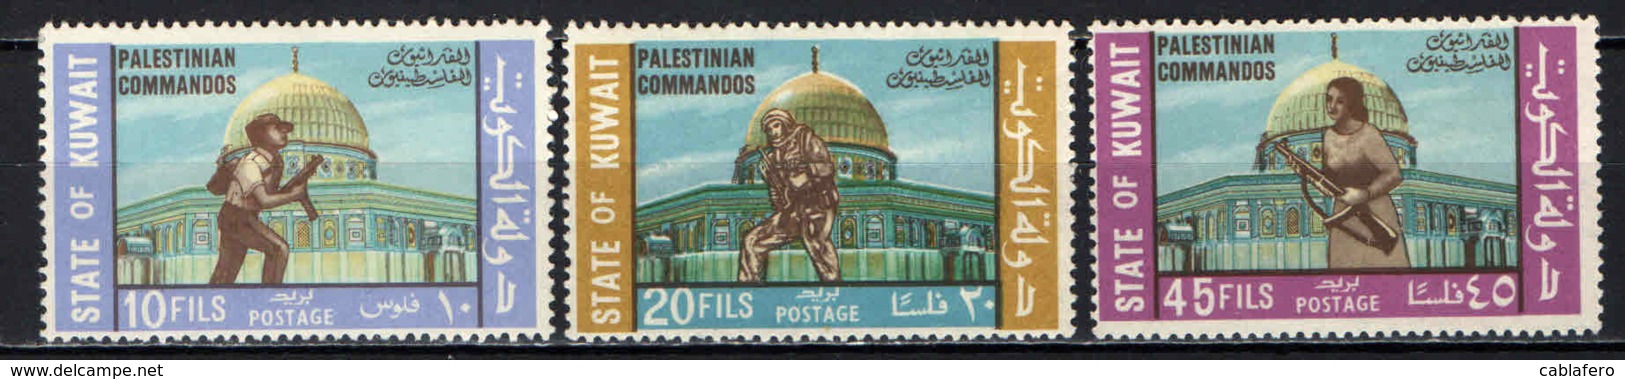 KUWAIT - 1970 - Honoring Palestinian Commandos - MNH - Kuwait